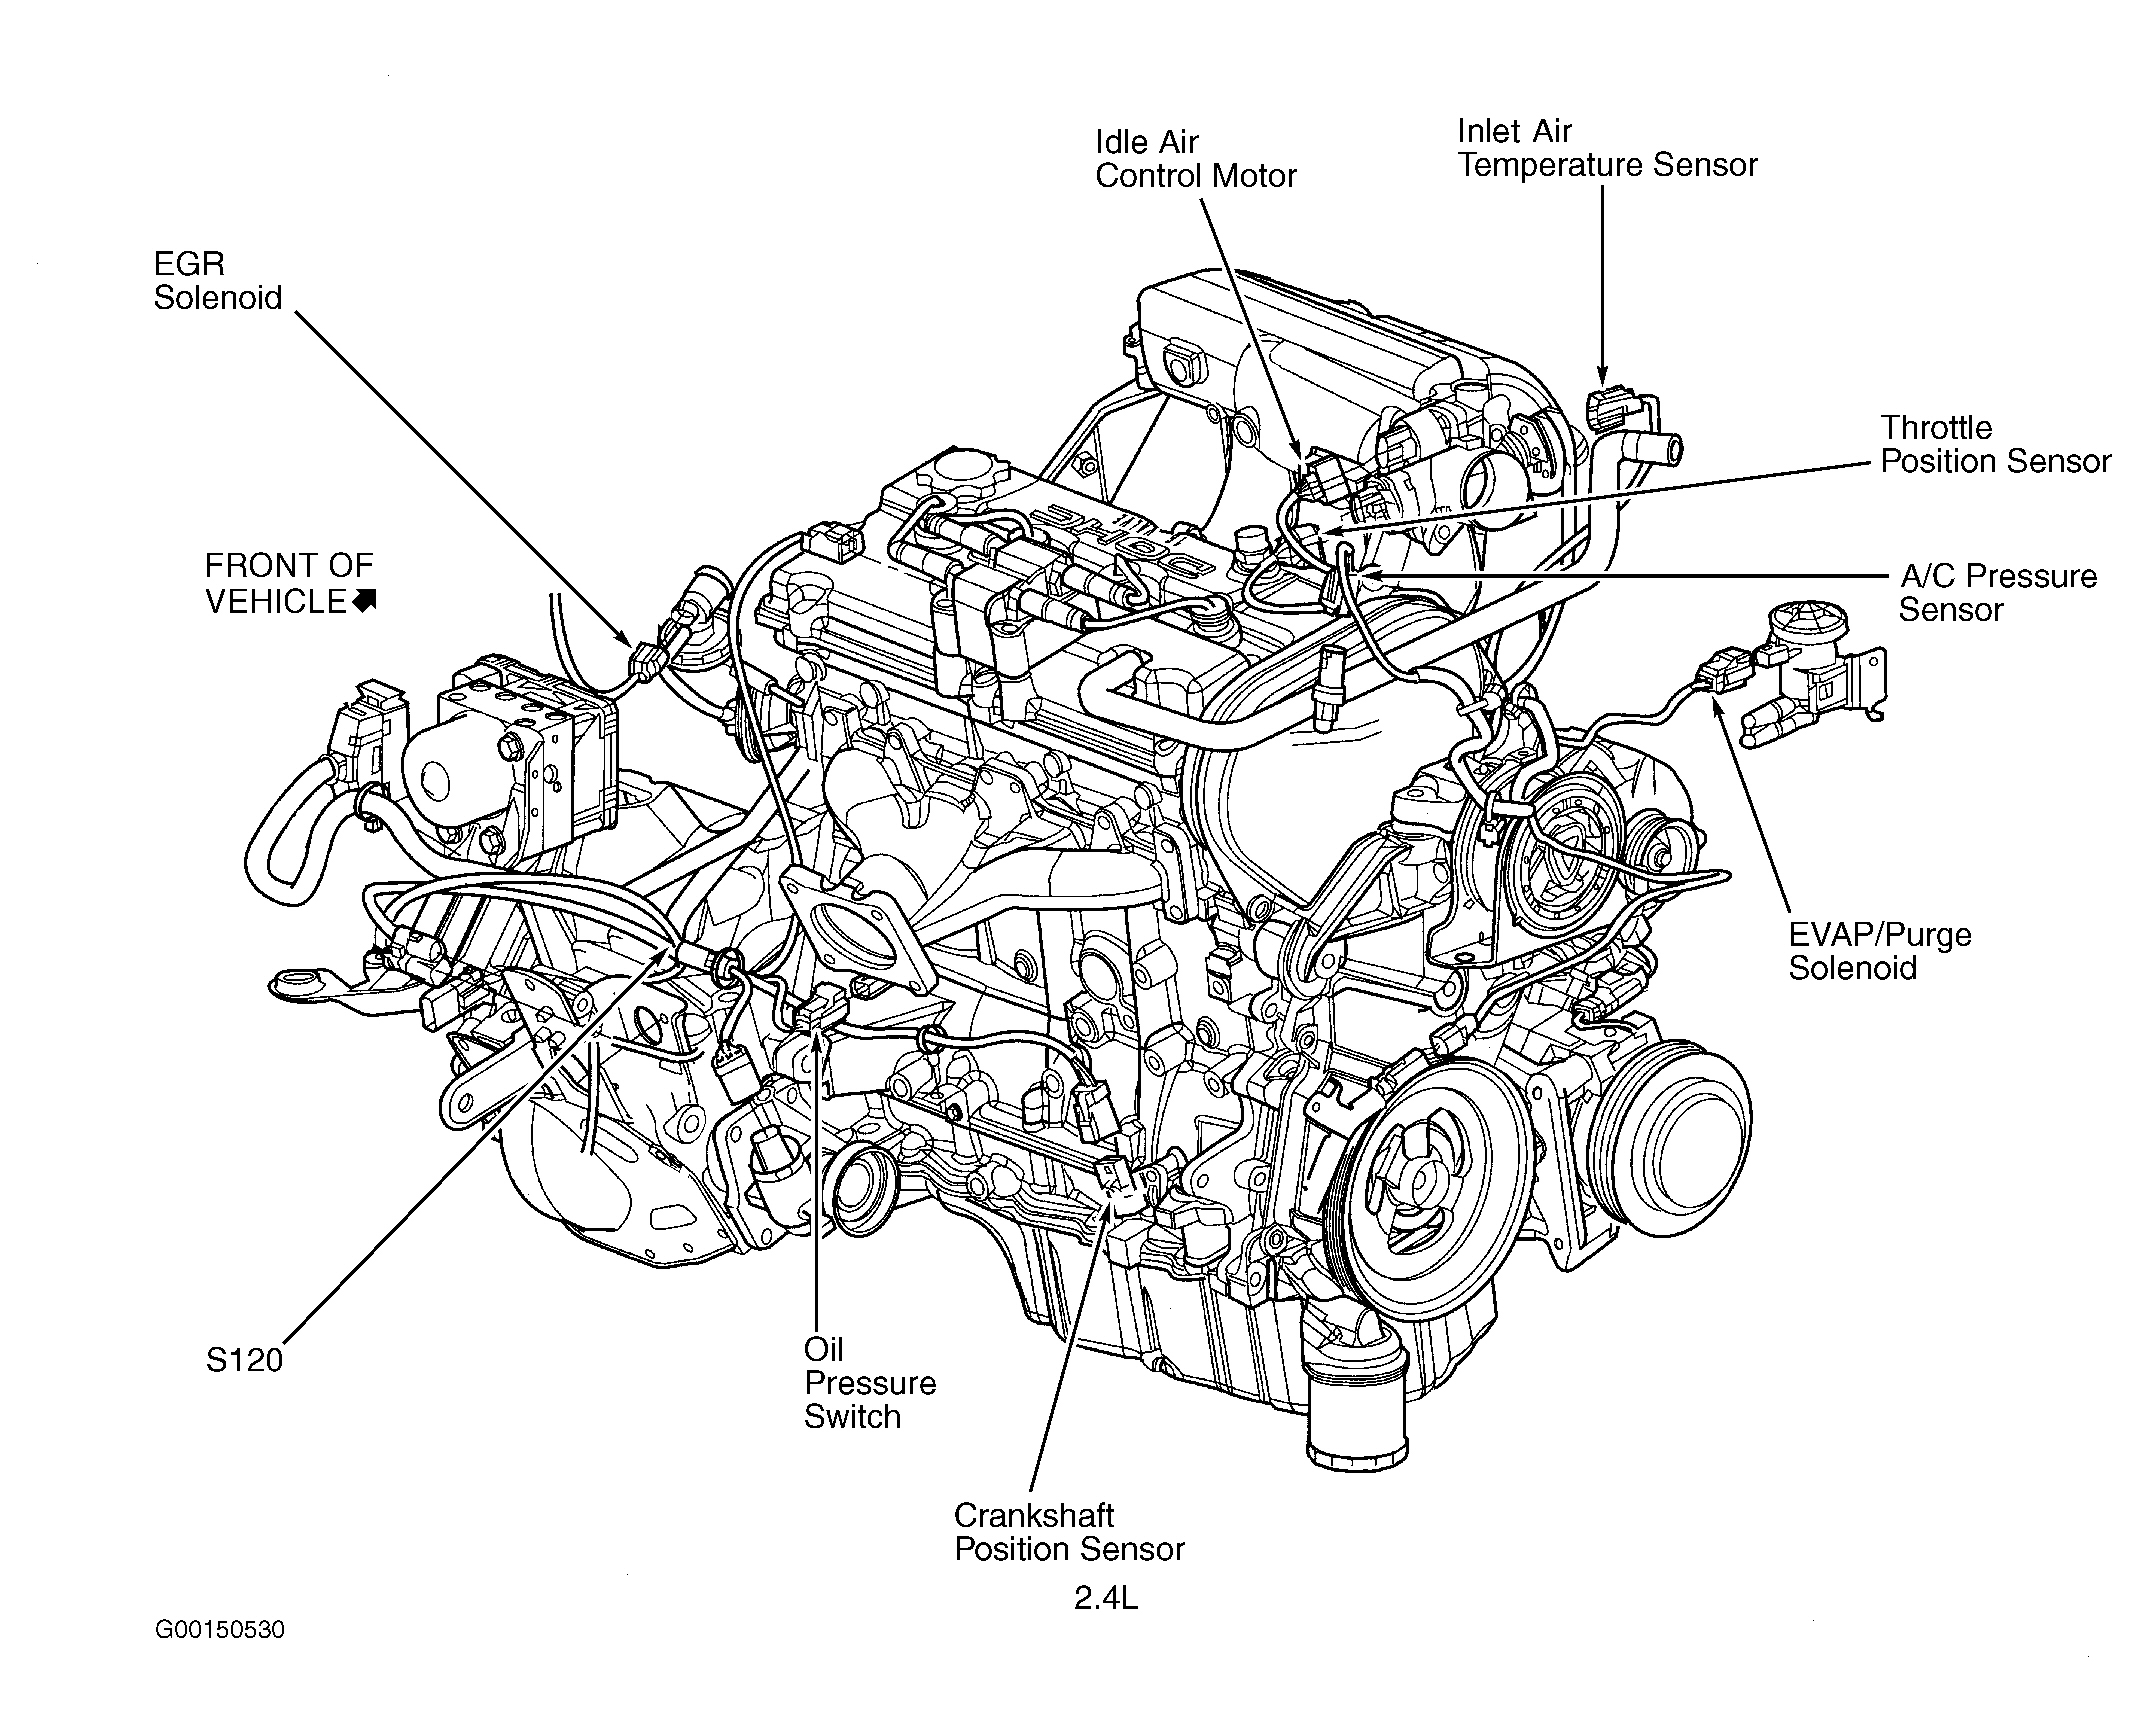 Dodge Grand Caravan EL 2003 - Component Locations -  Right Side Of Engine (2.4L)